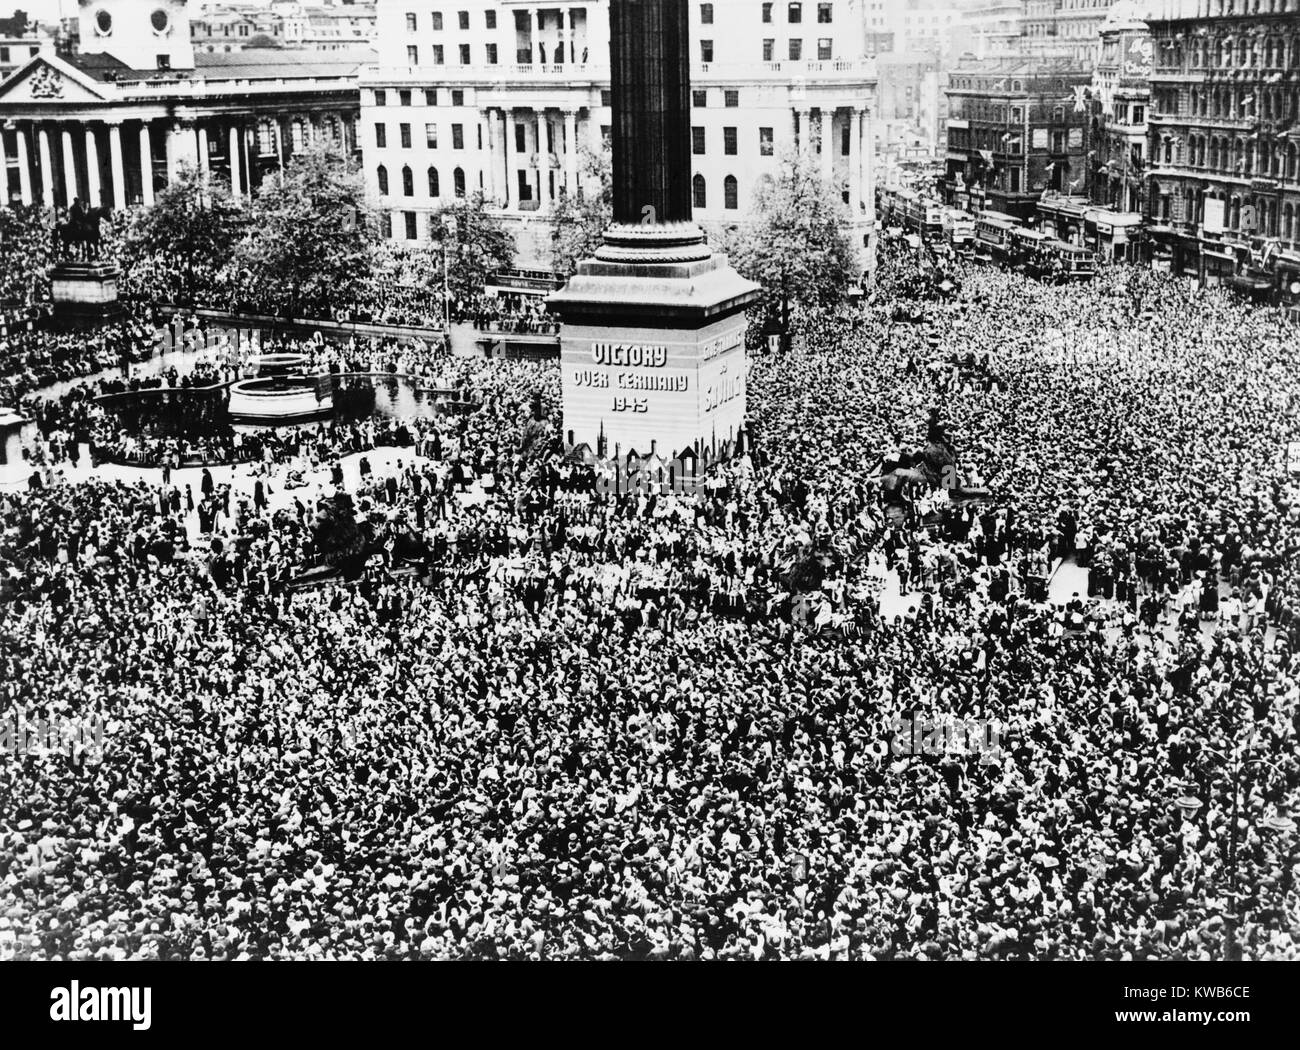 V E Day Celebrations In Trafalgar Square London May 7 1945